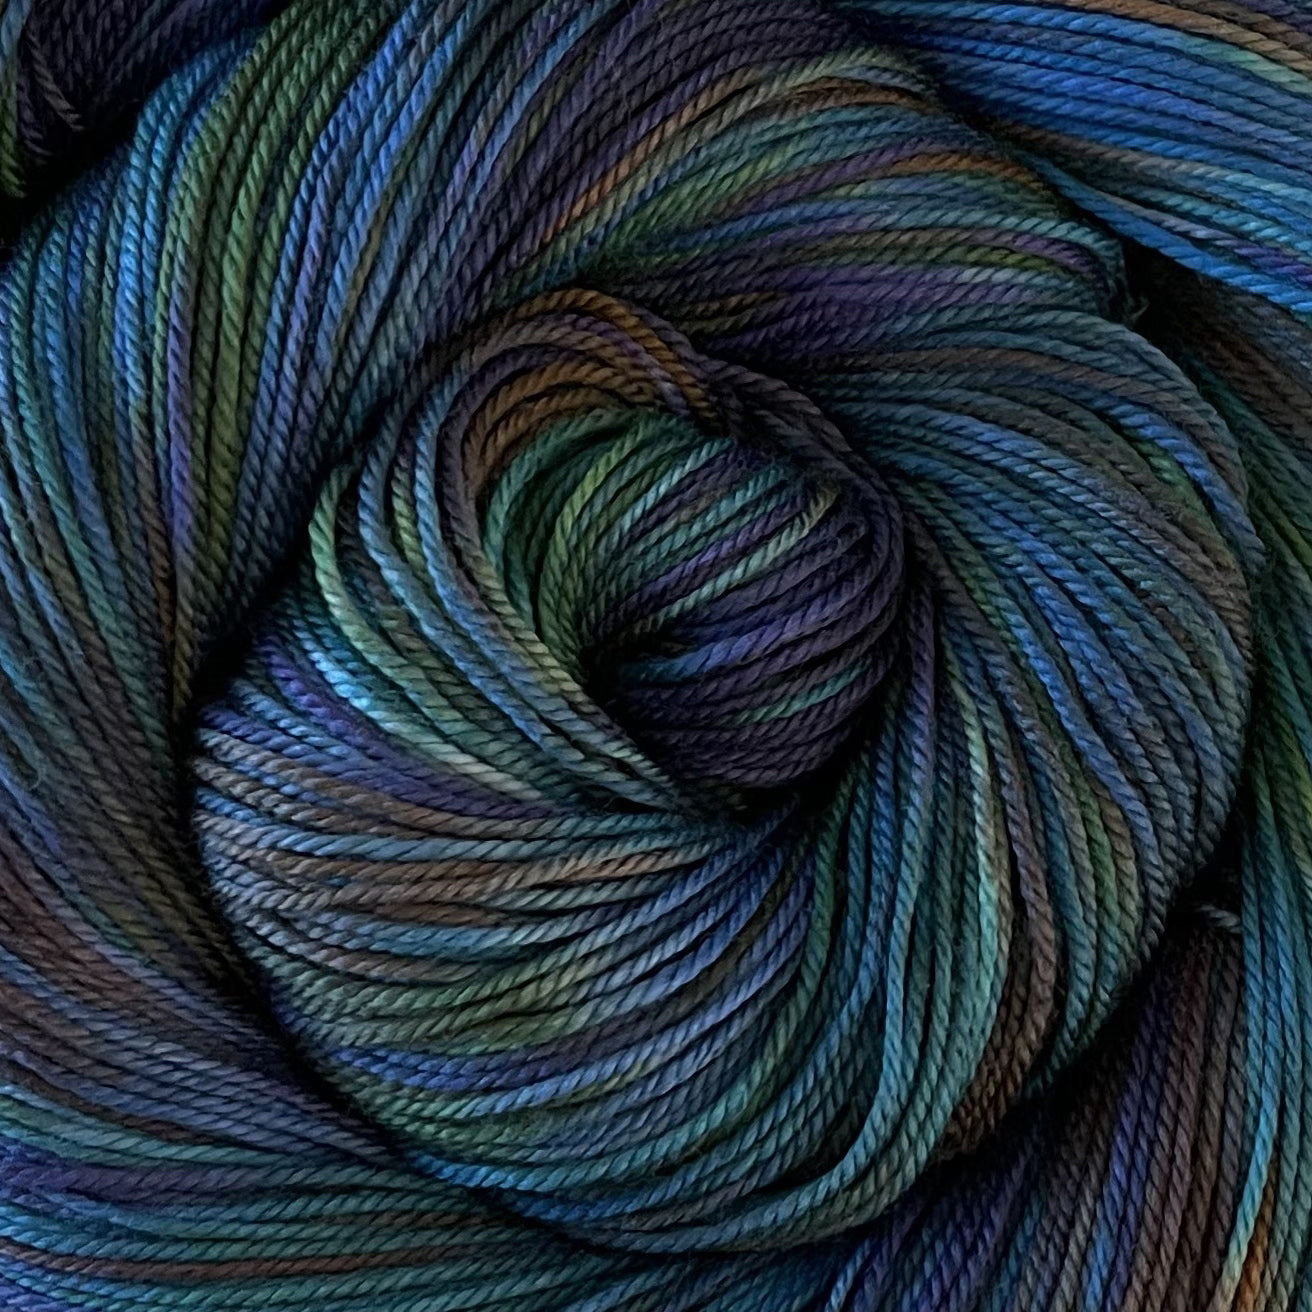 Peacock, Yarn